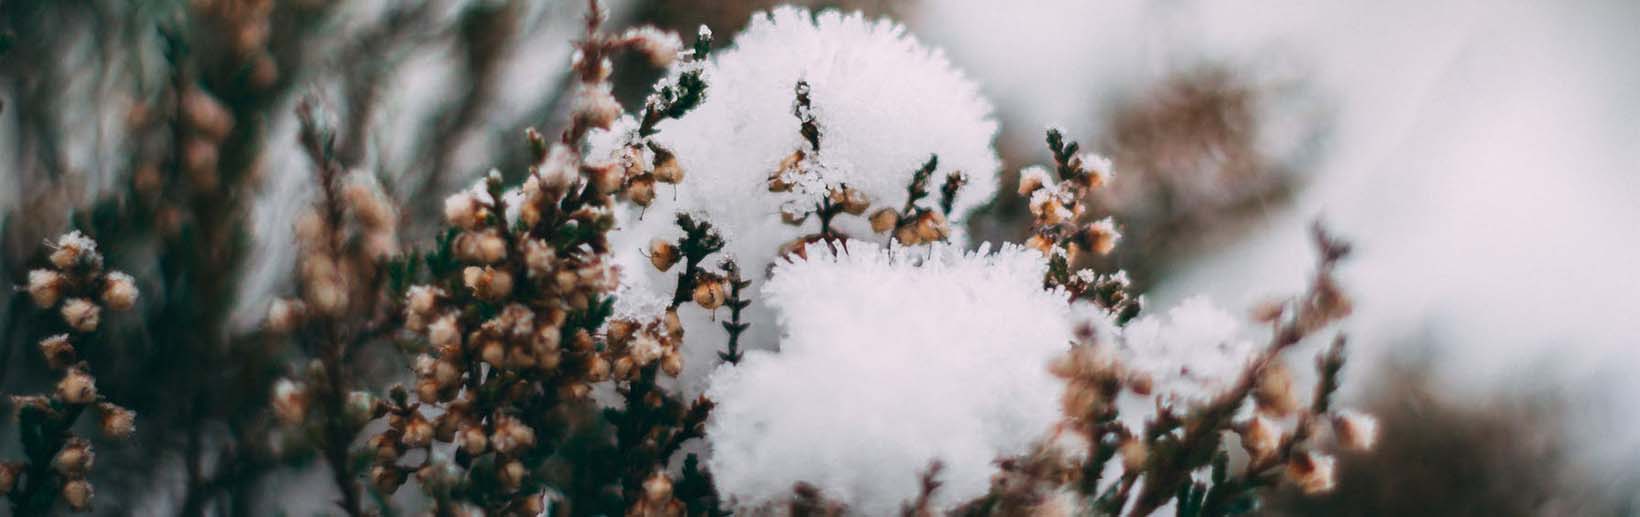 image pour fleurs d'hiver